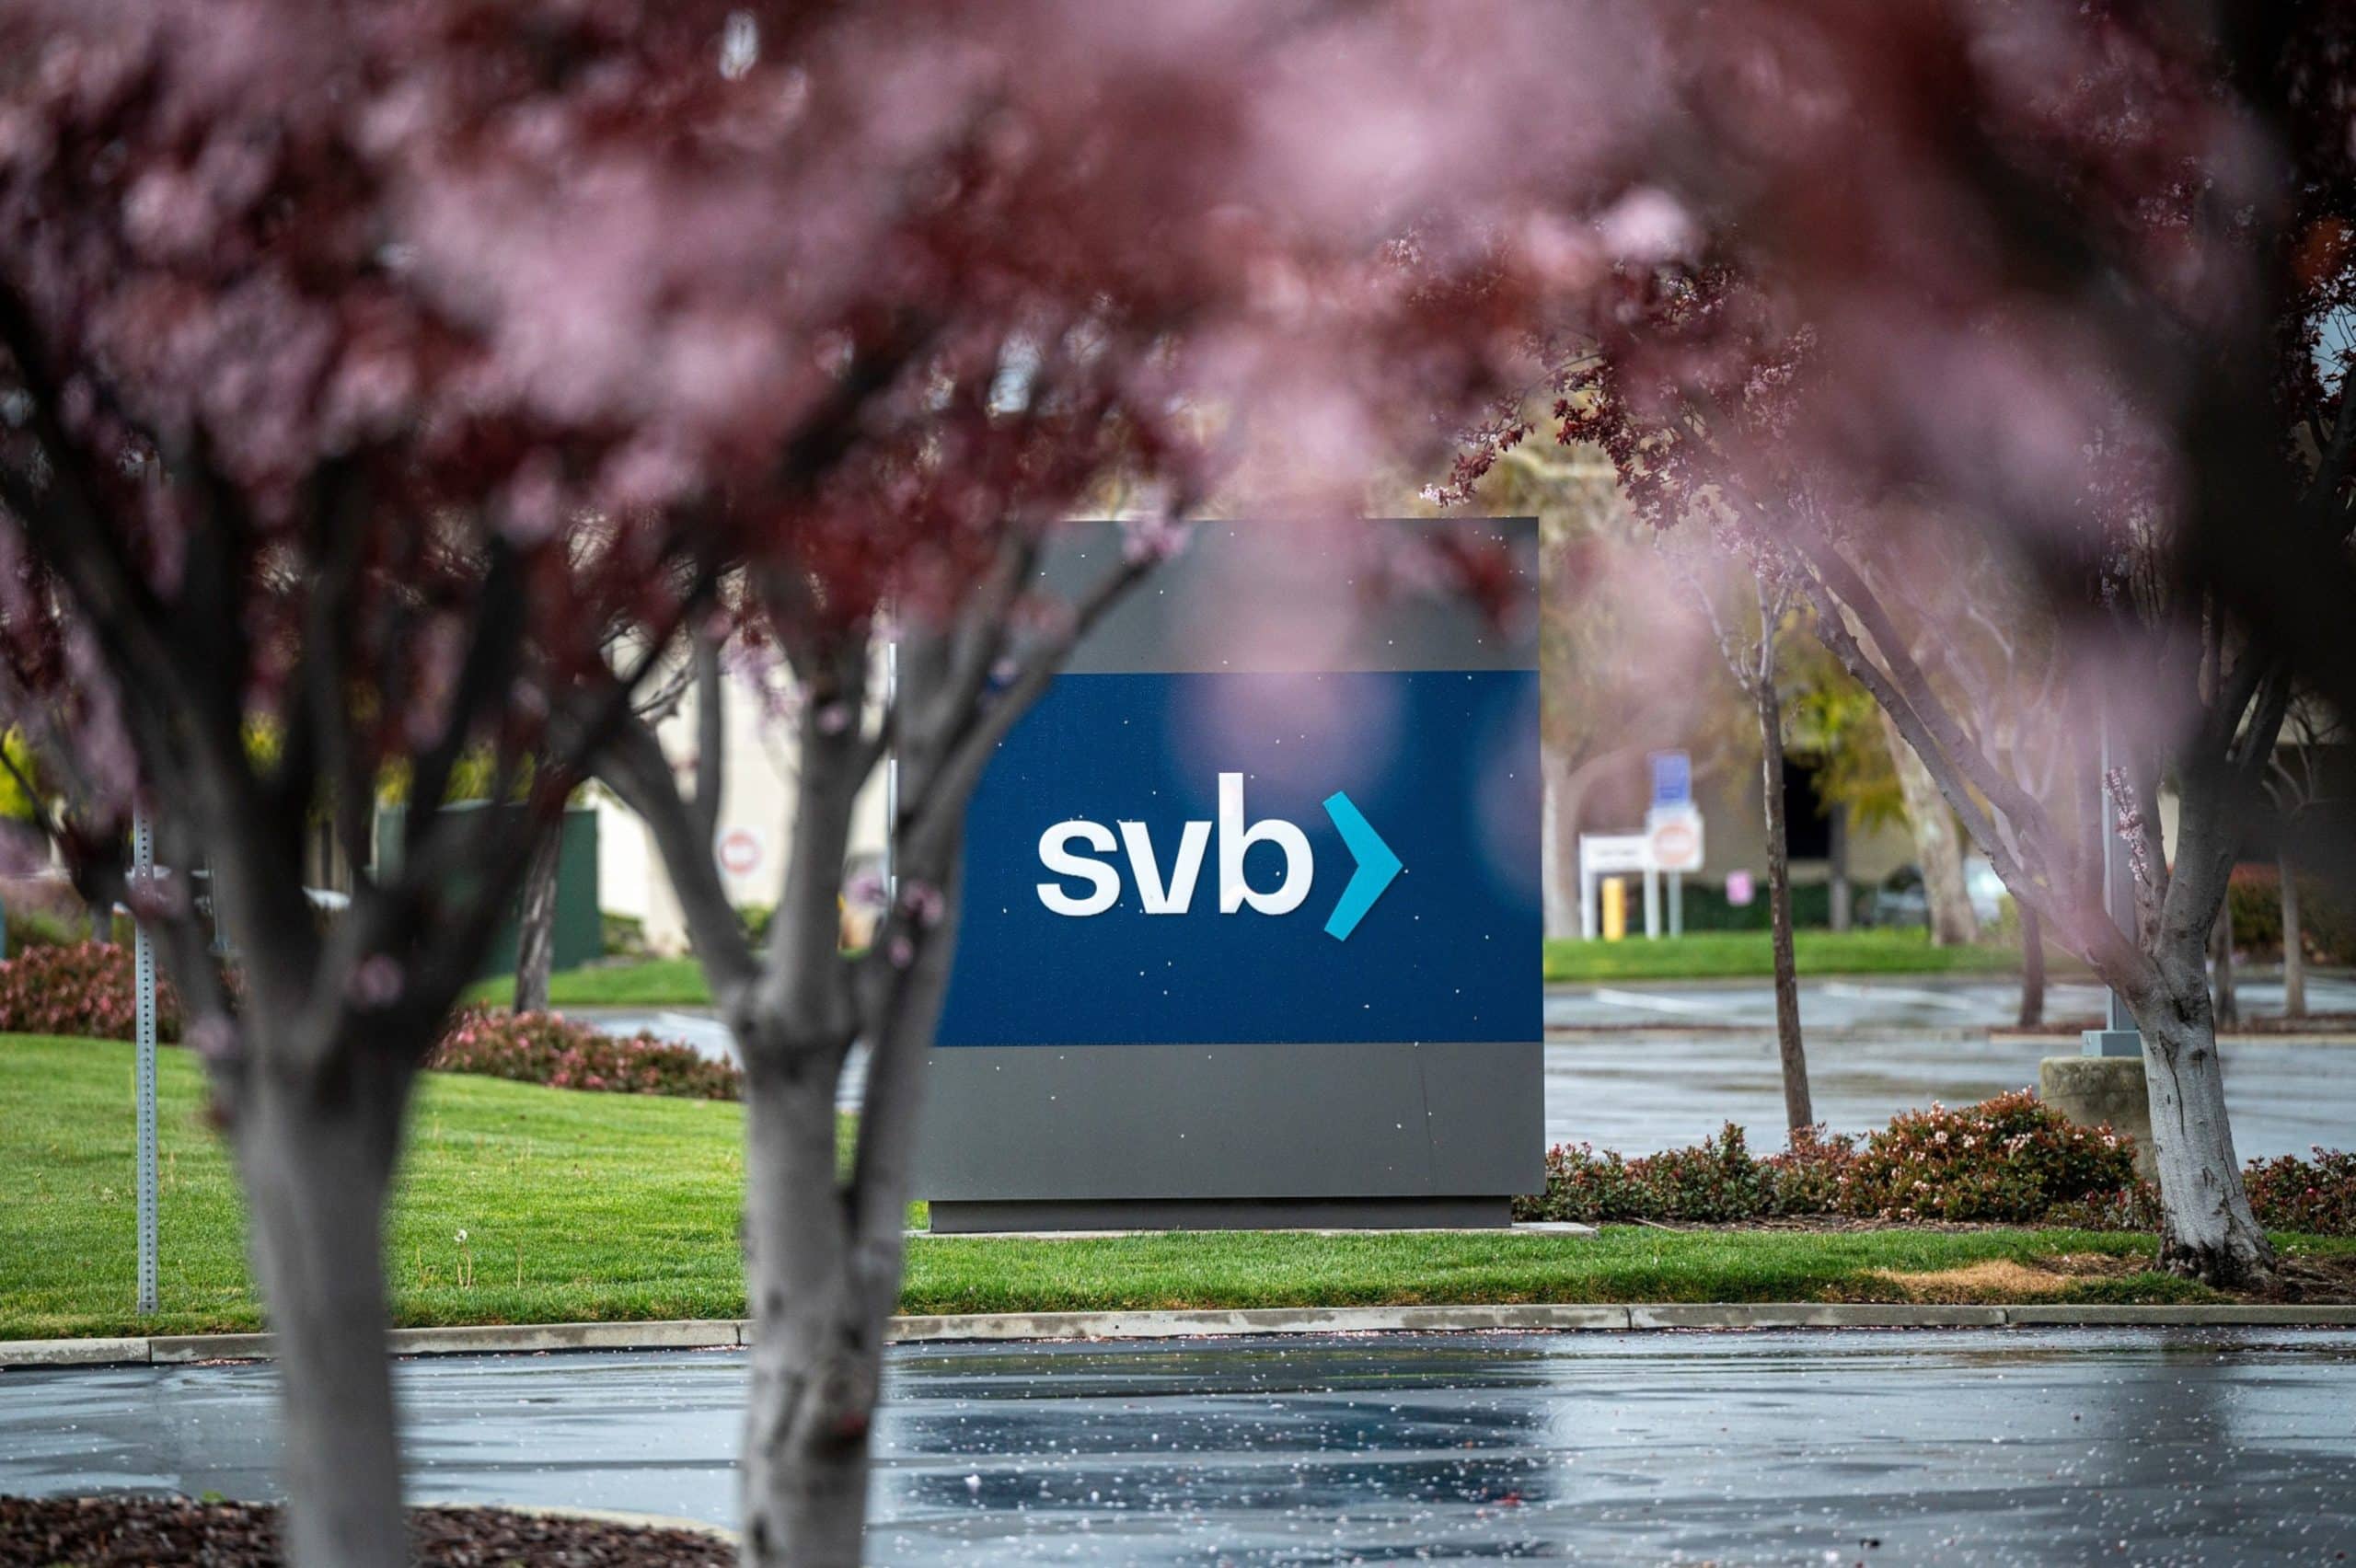 A Silicon Valley Bank gyorsan összeomlik, miután a technológiai startupok elmenekültek